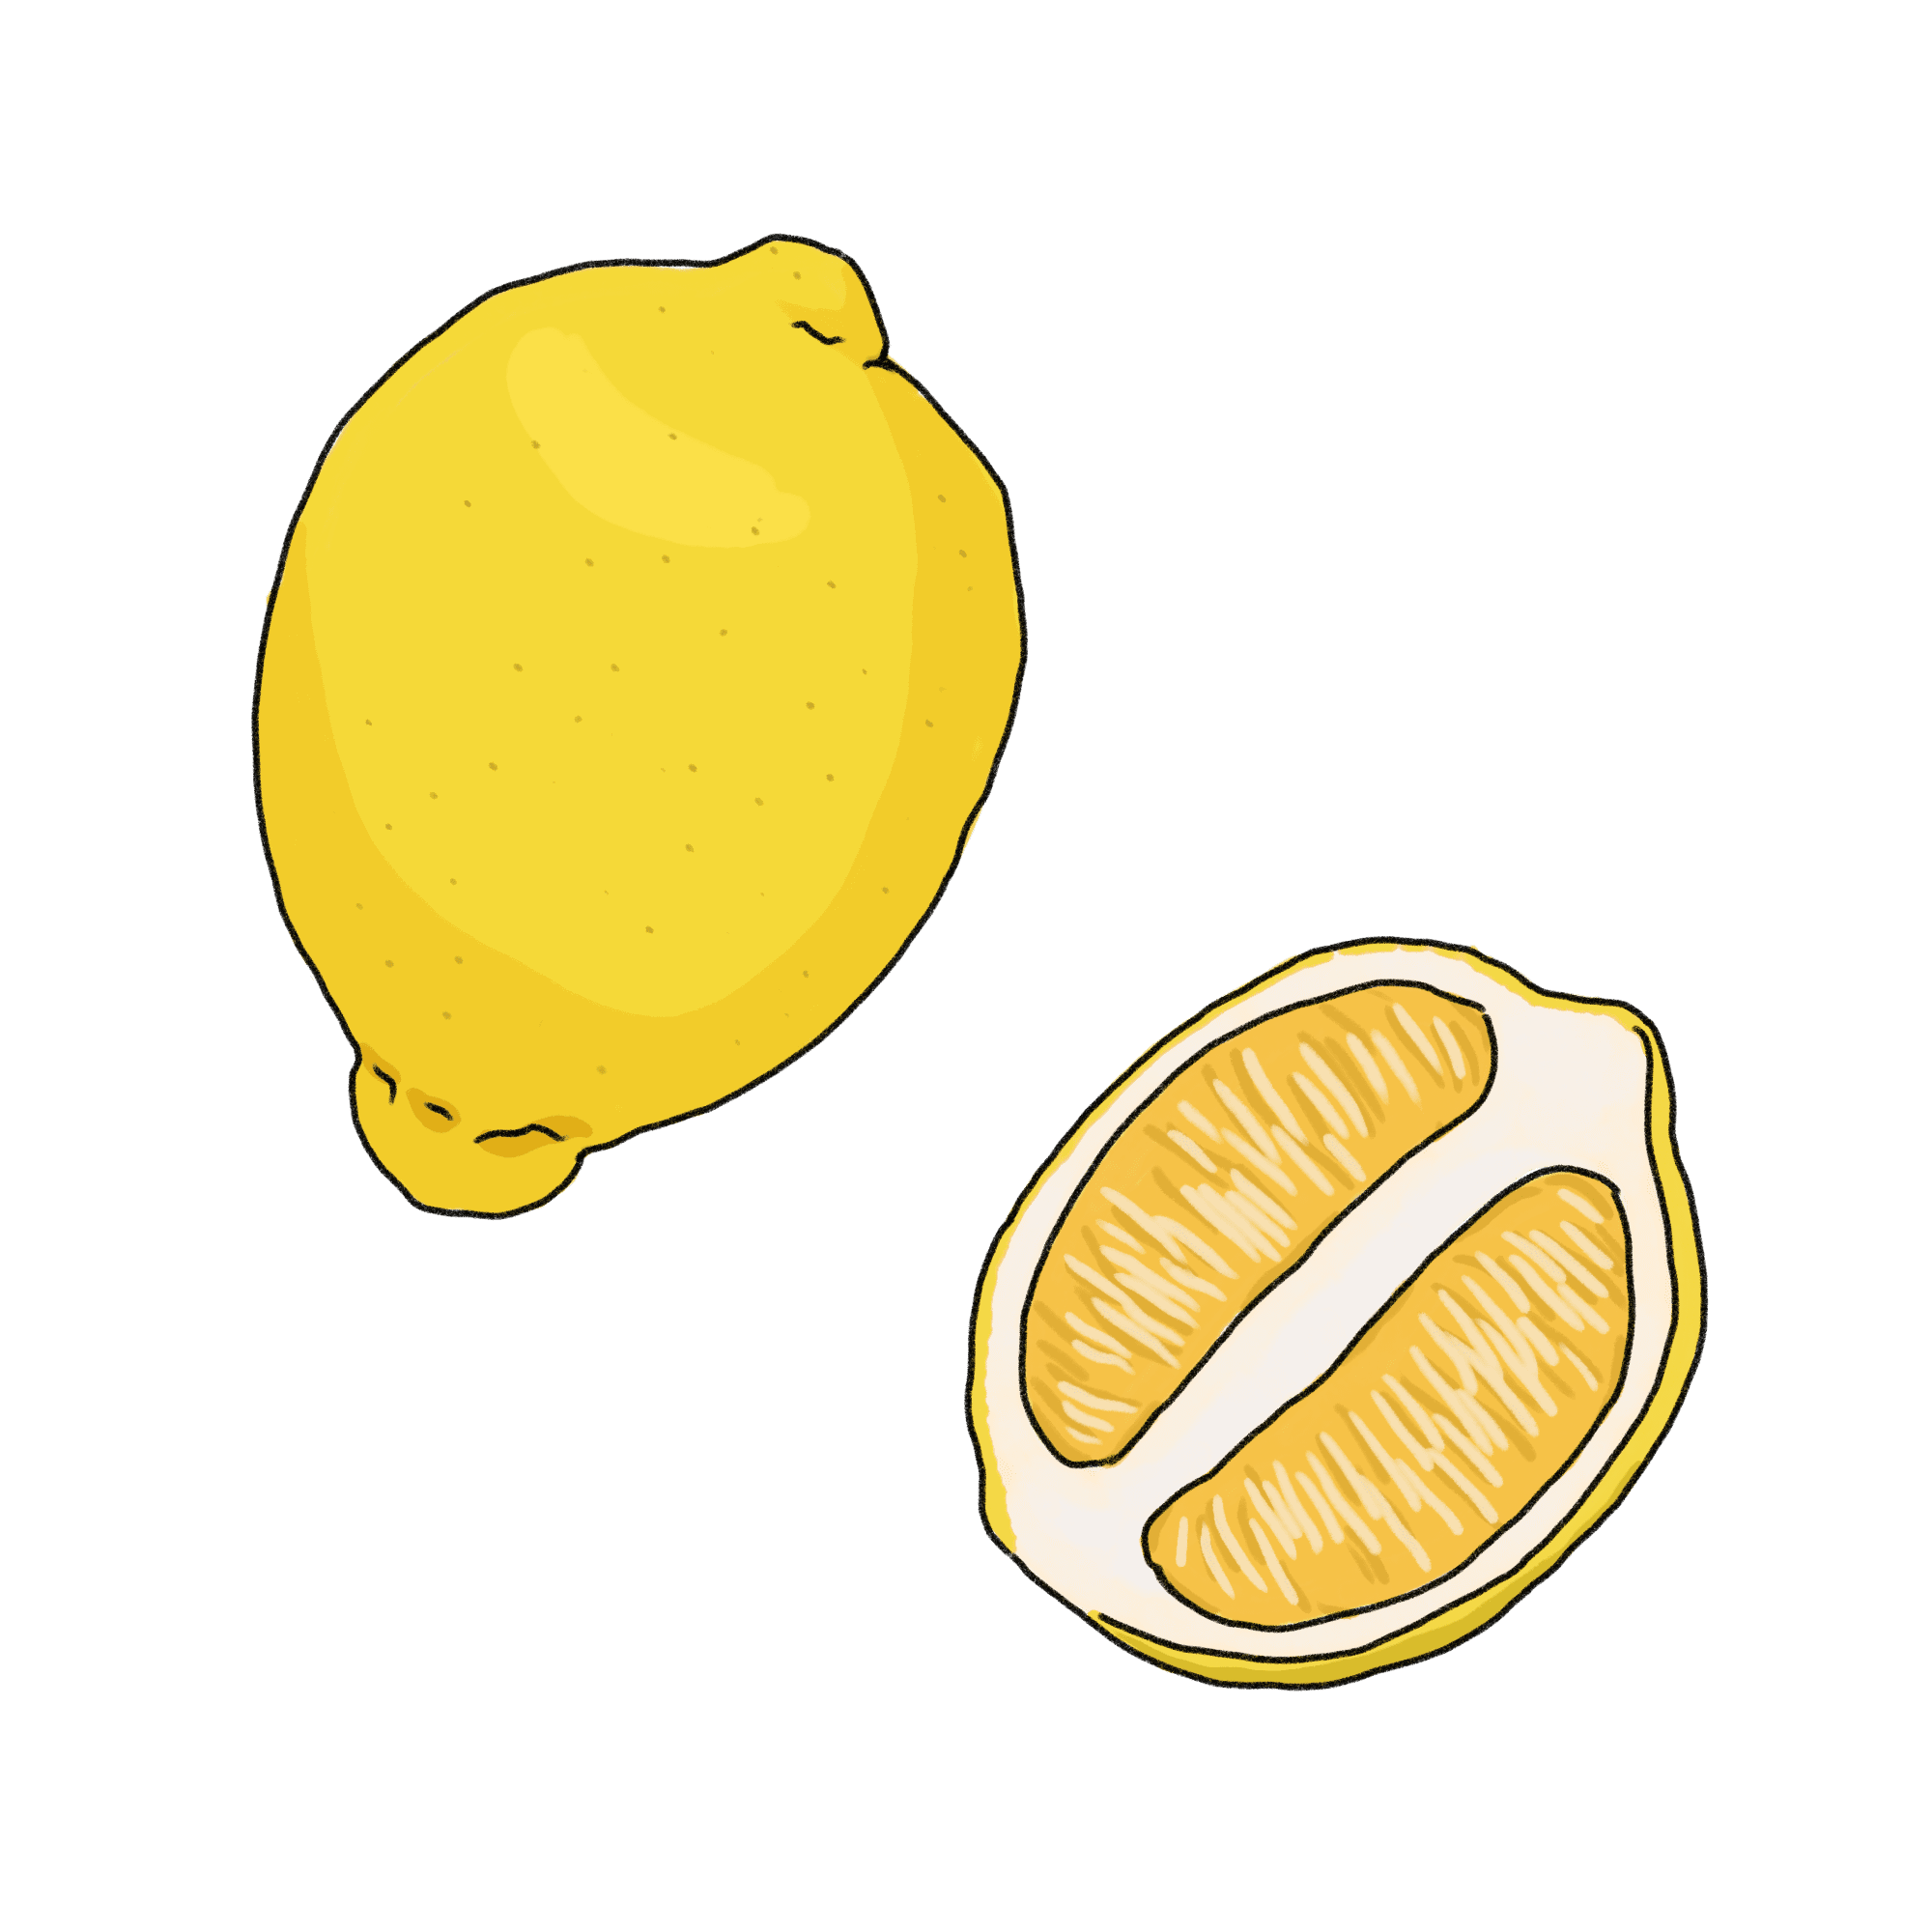 レモンのイラスト 02 フリー素材 Greenstock40